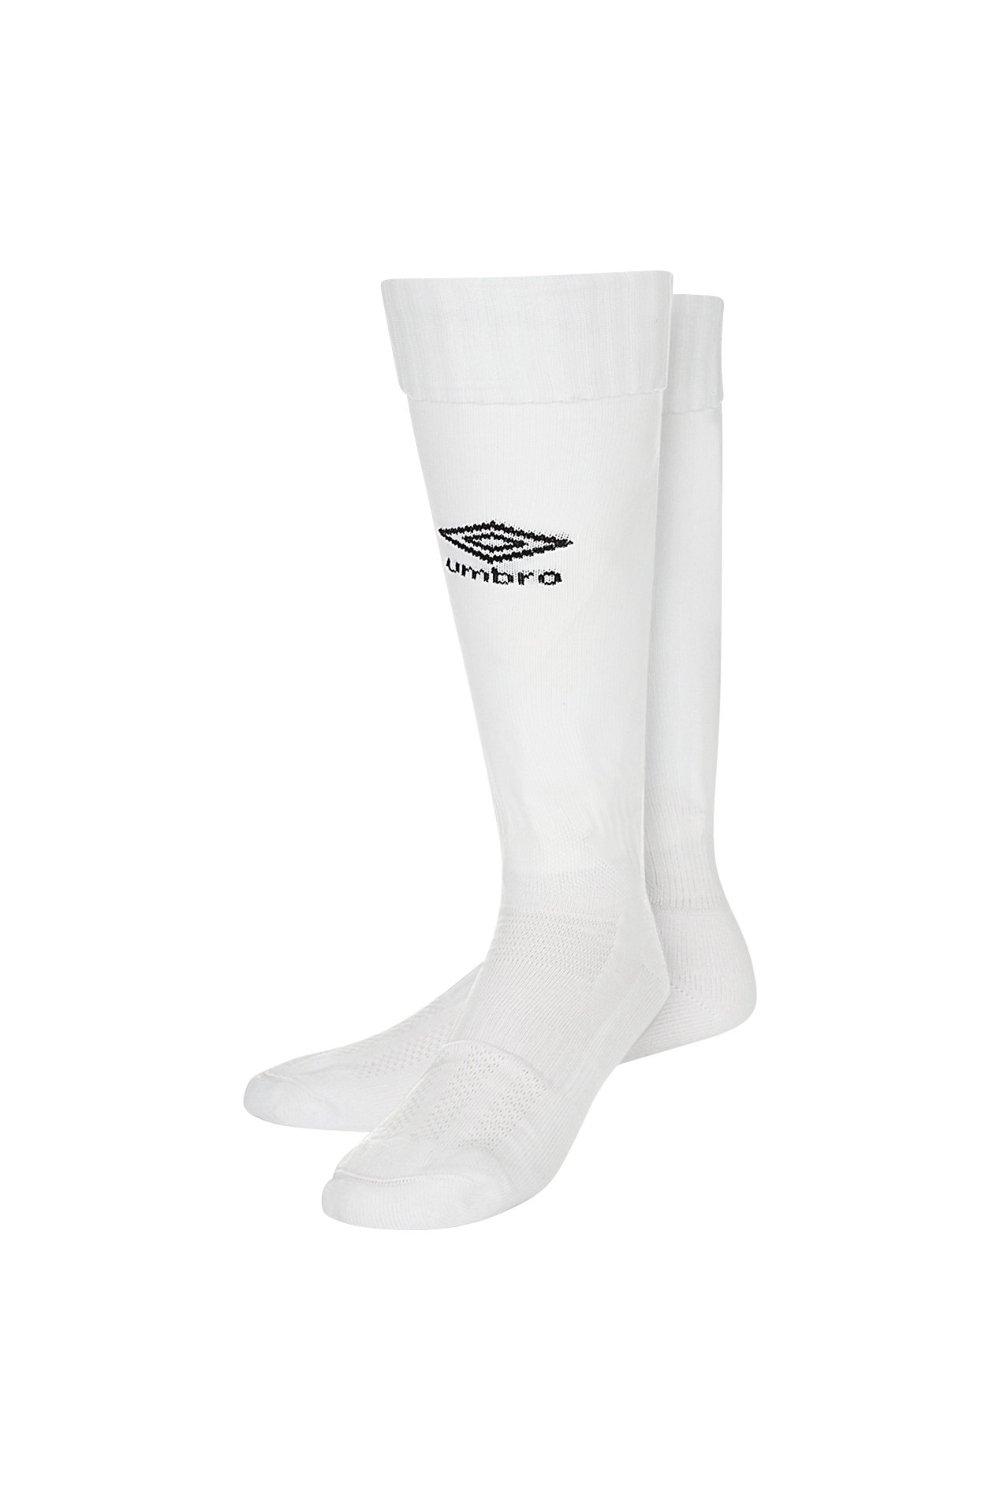 Футбольные носки Classico Umbro, белый